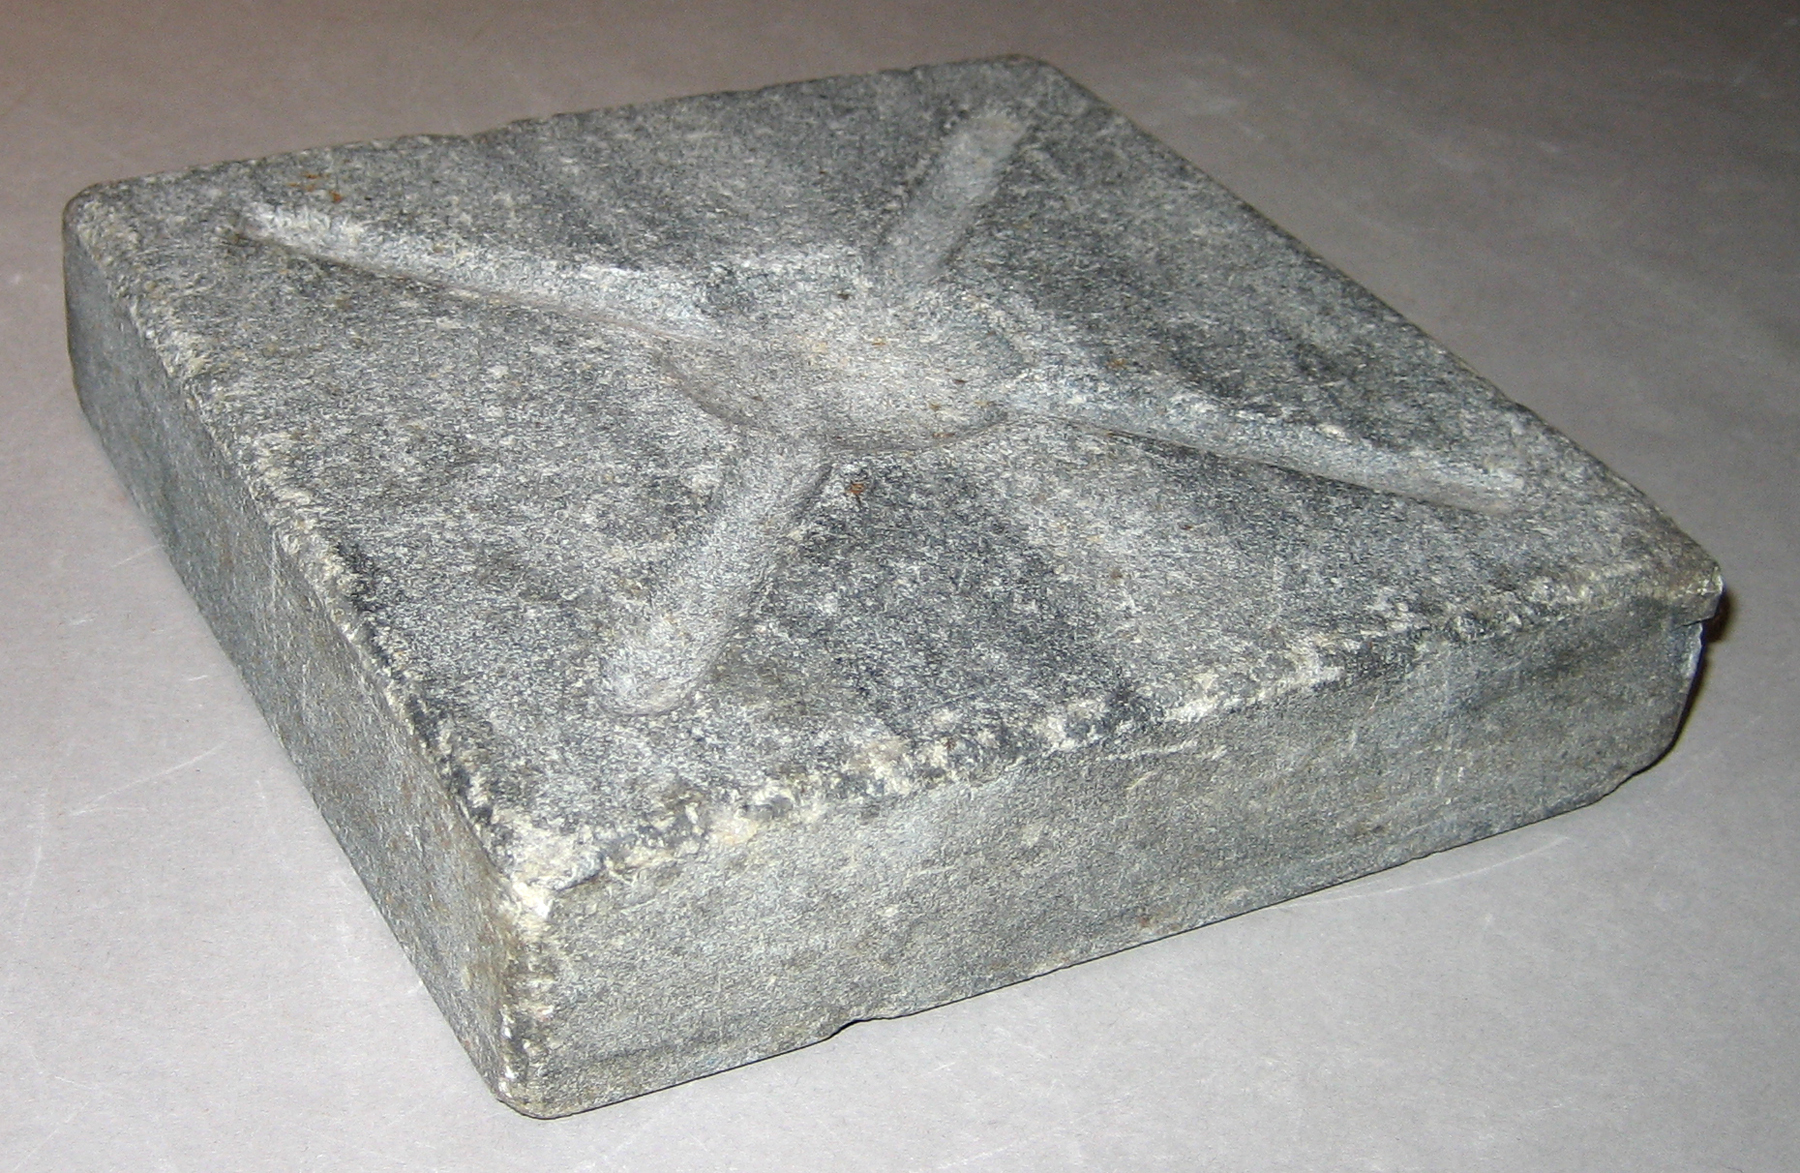 Inorganic (stone, mineral, etc.) - Tong stone